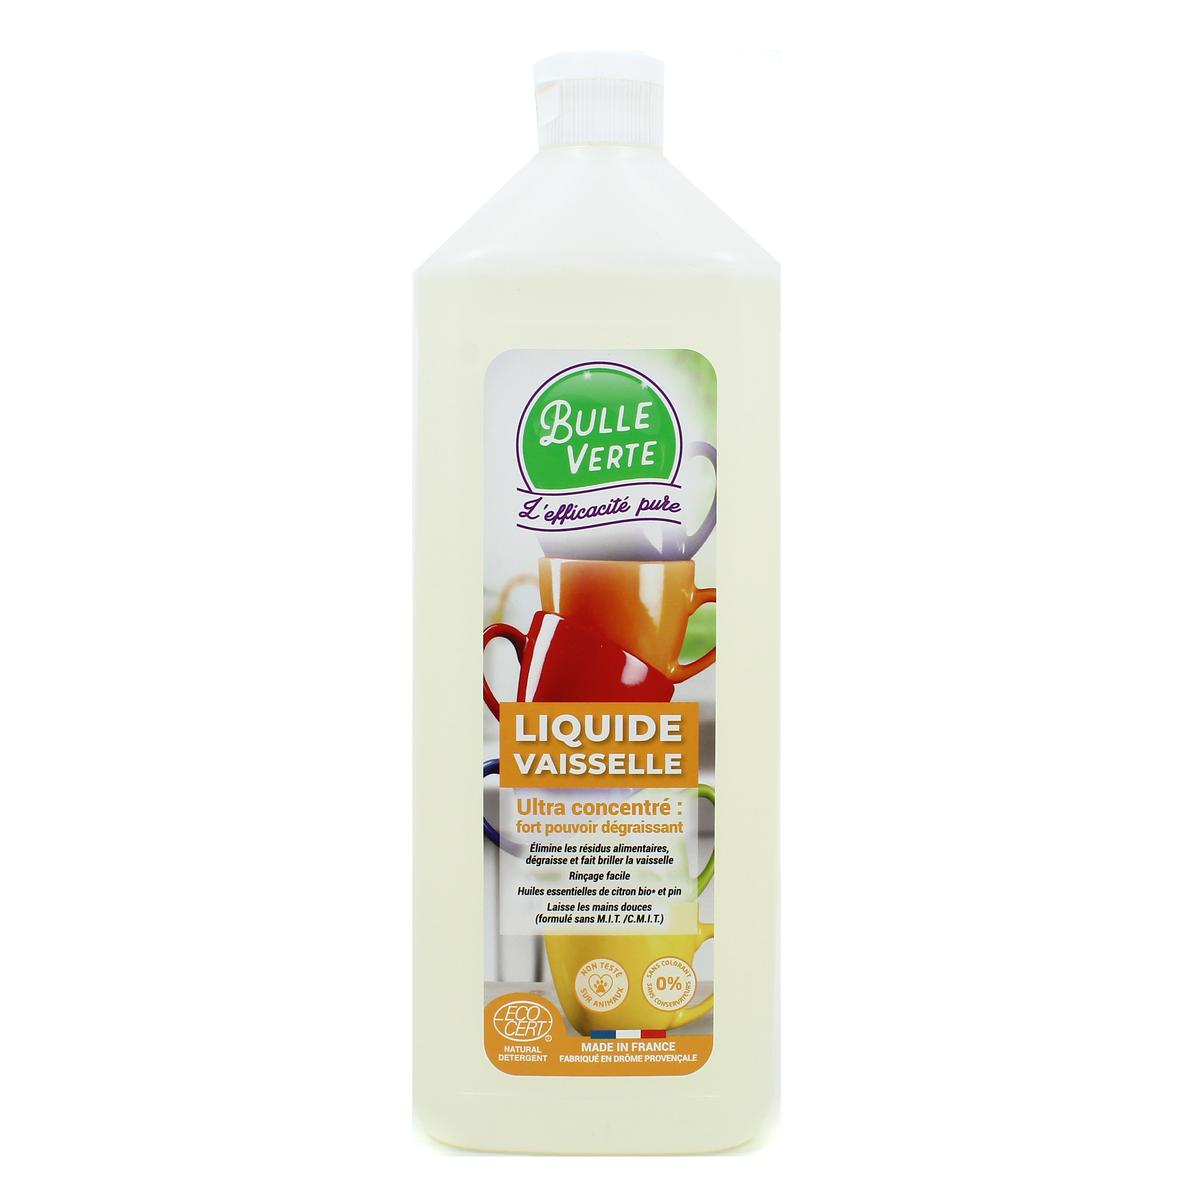 Una Liquide vaiselle Fraicheur citron - Produits d'entretien -ALDI